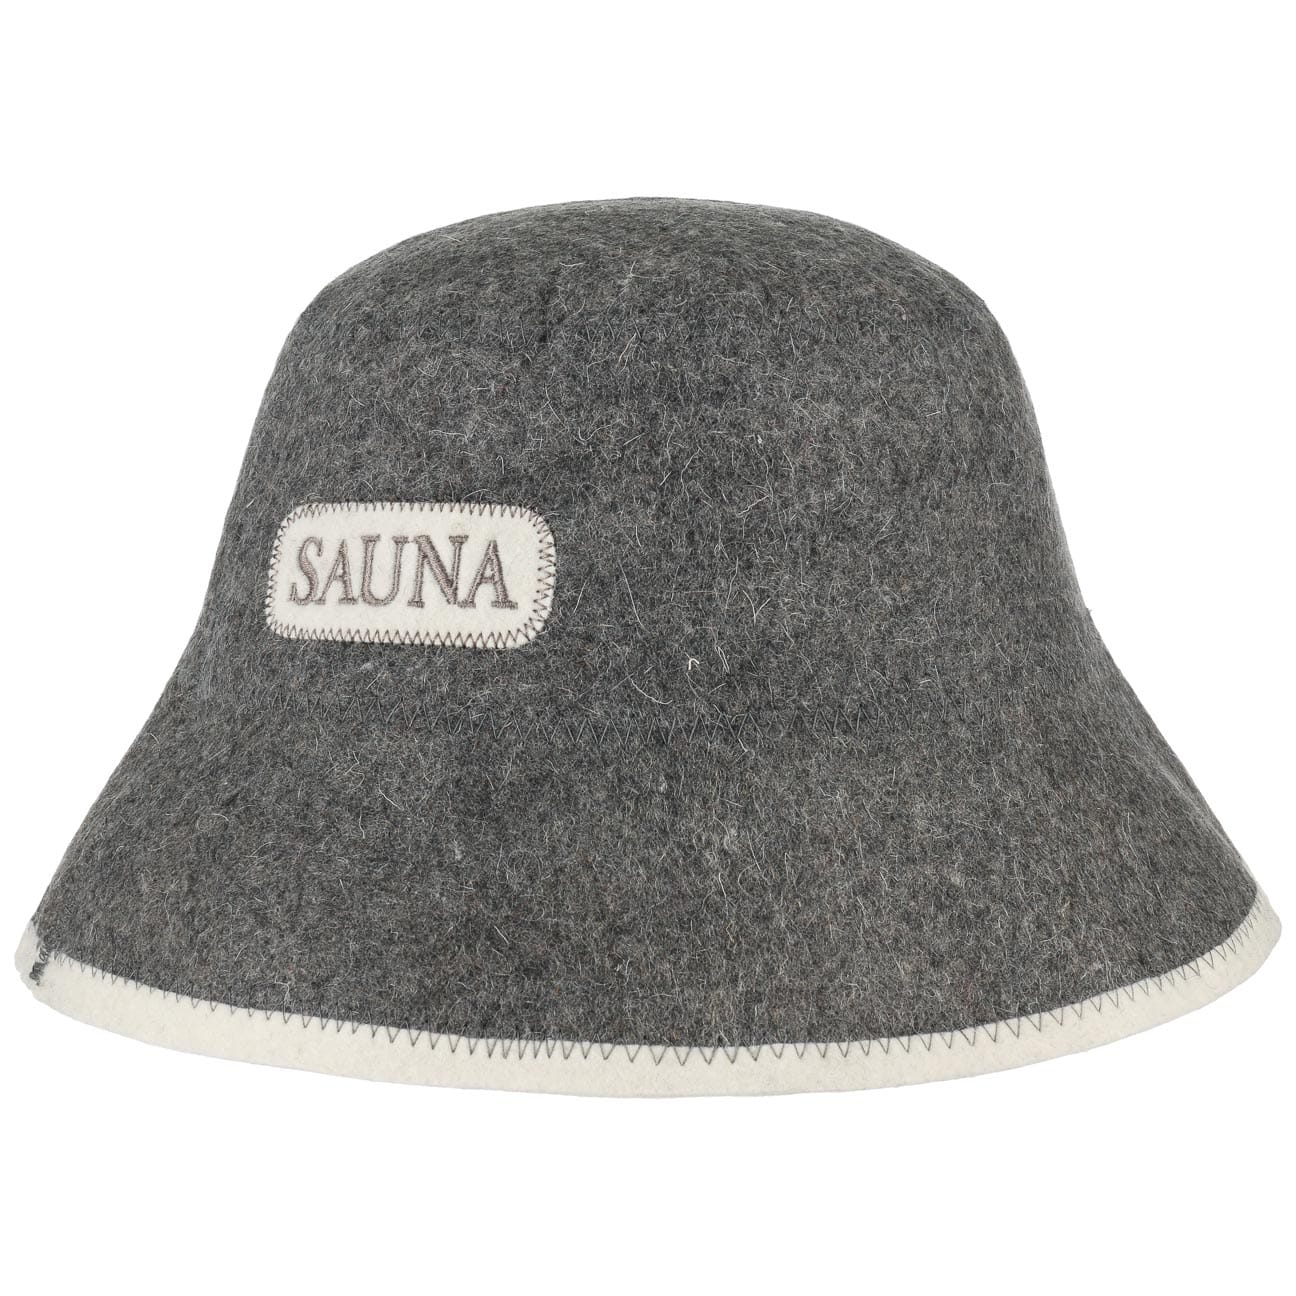 Sauna CAP hat 100% wool TOP quality bath beanie bania NATURAL hat 